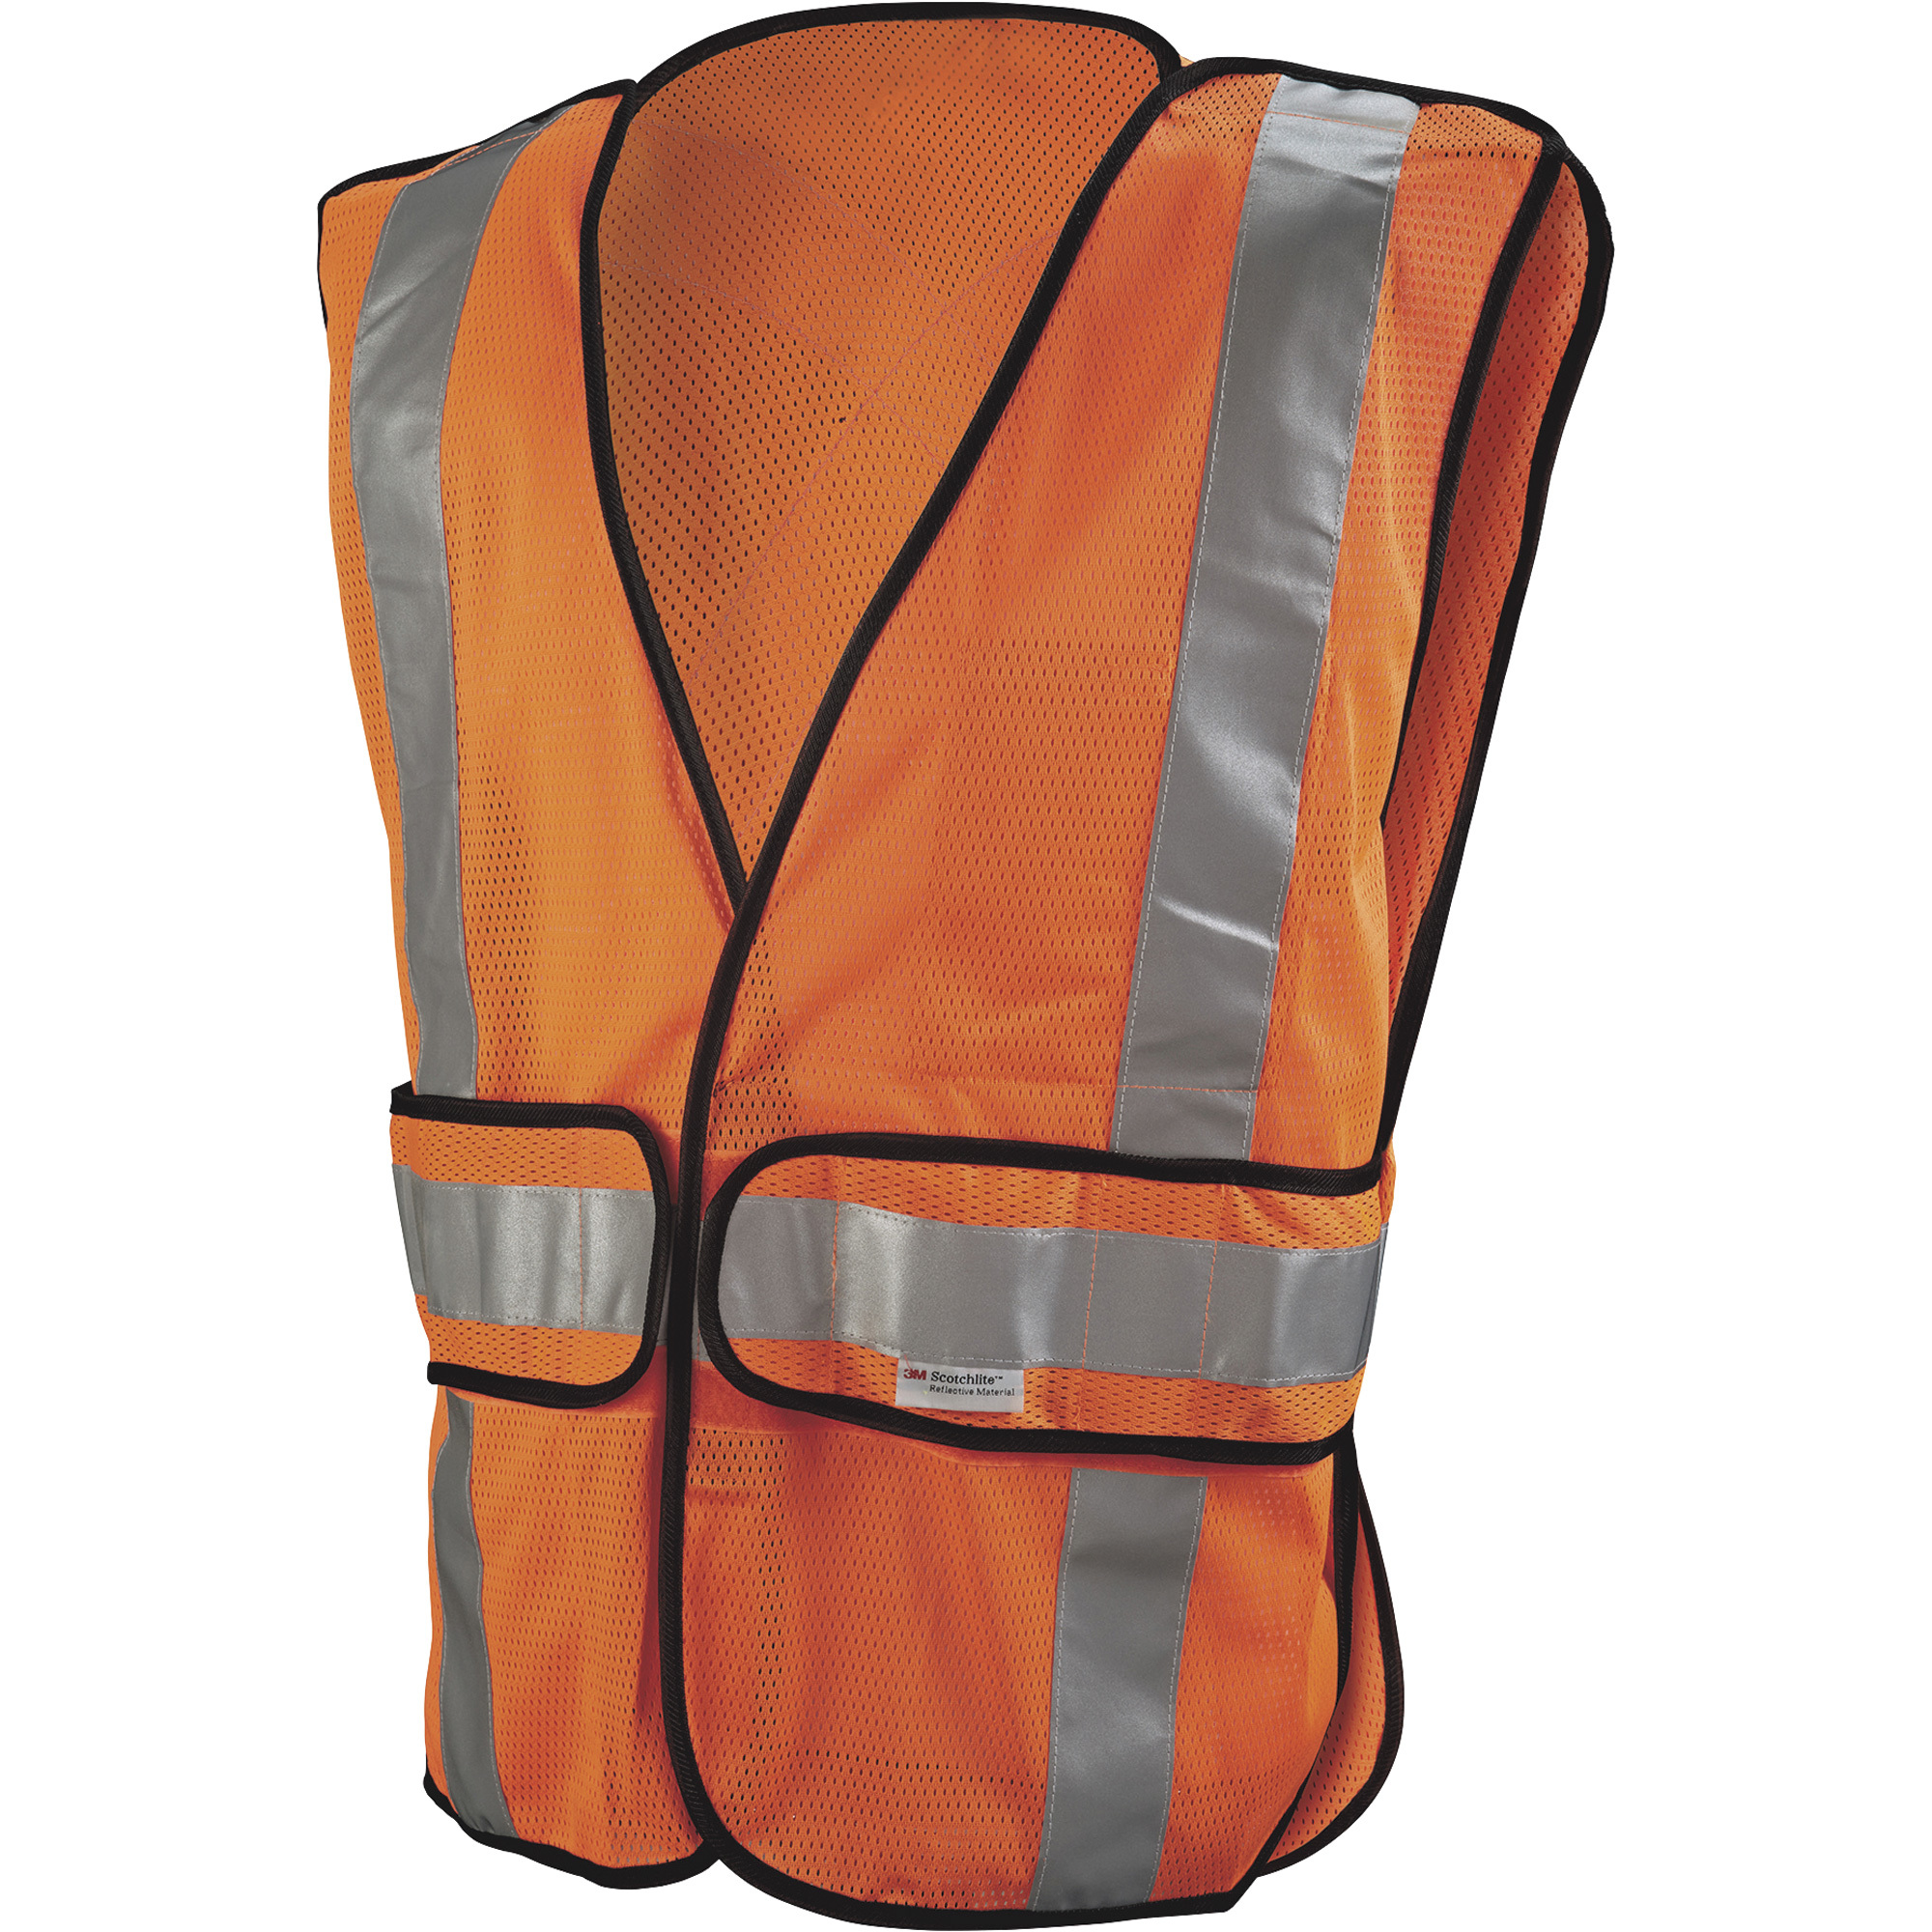 3M Men's Class 2 High-Visibility Construction Safety Vest â Orange, Model 94625-80030-PS